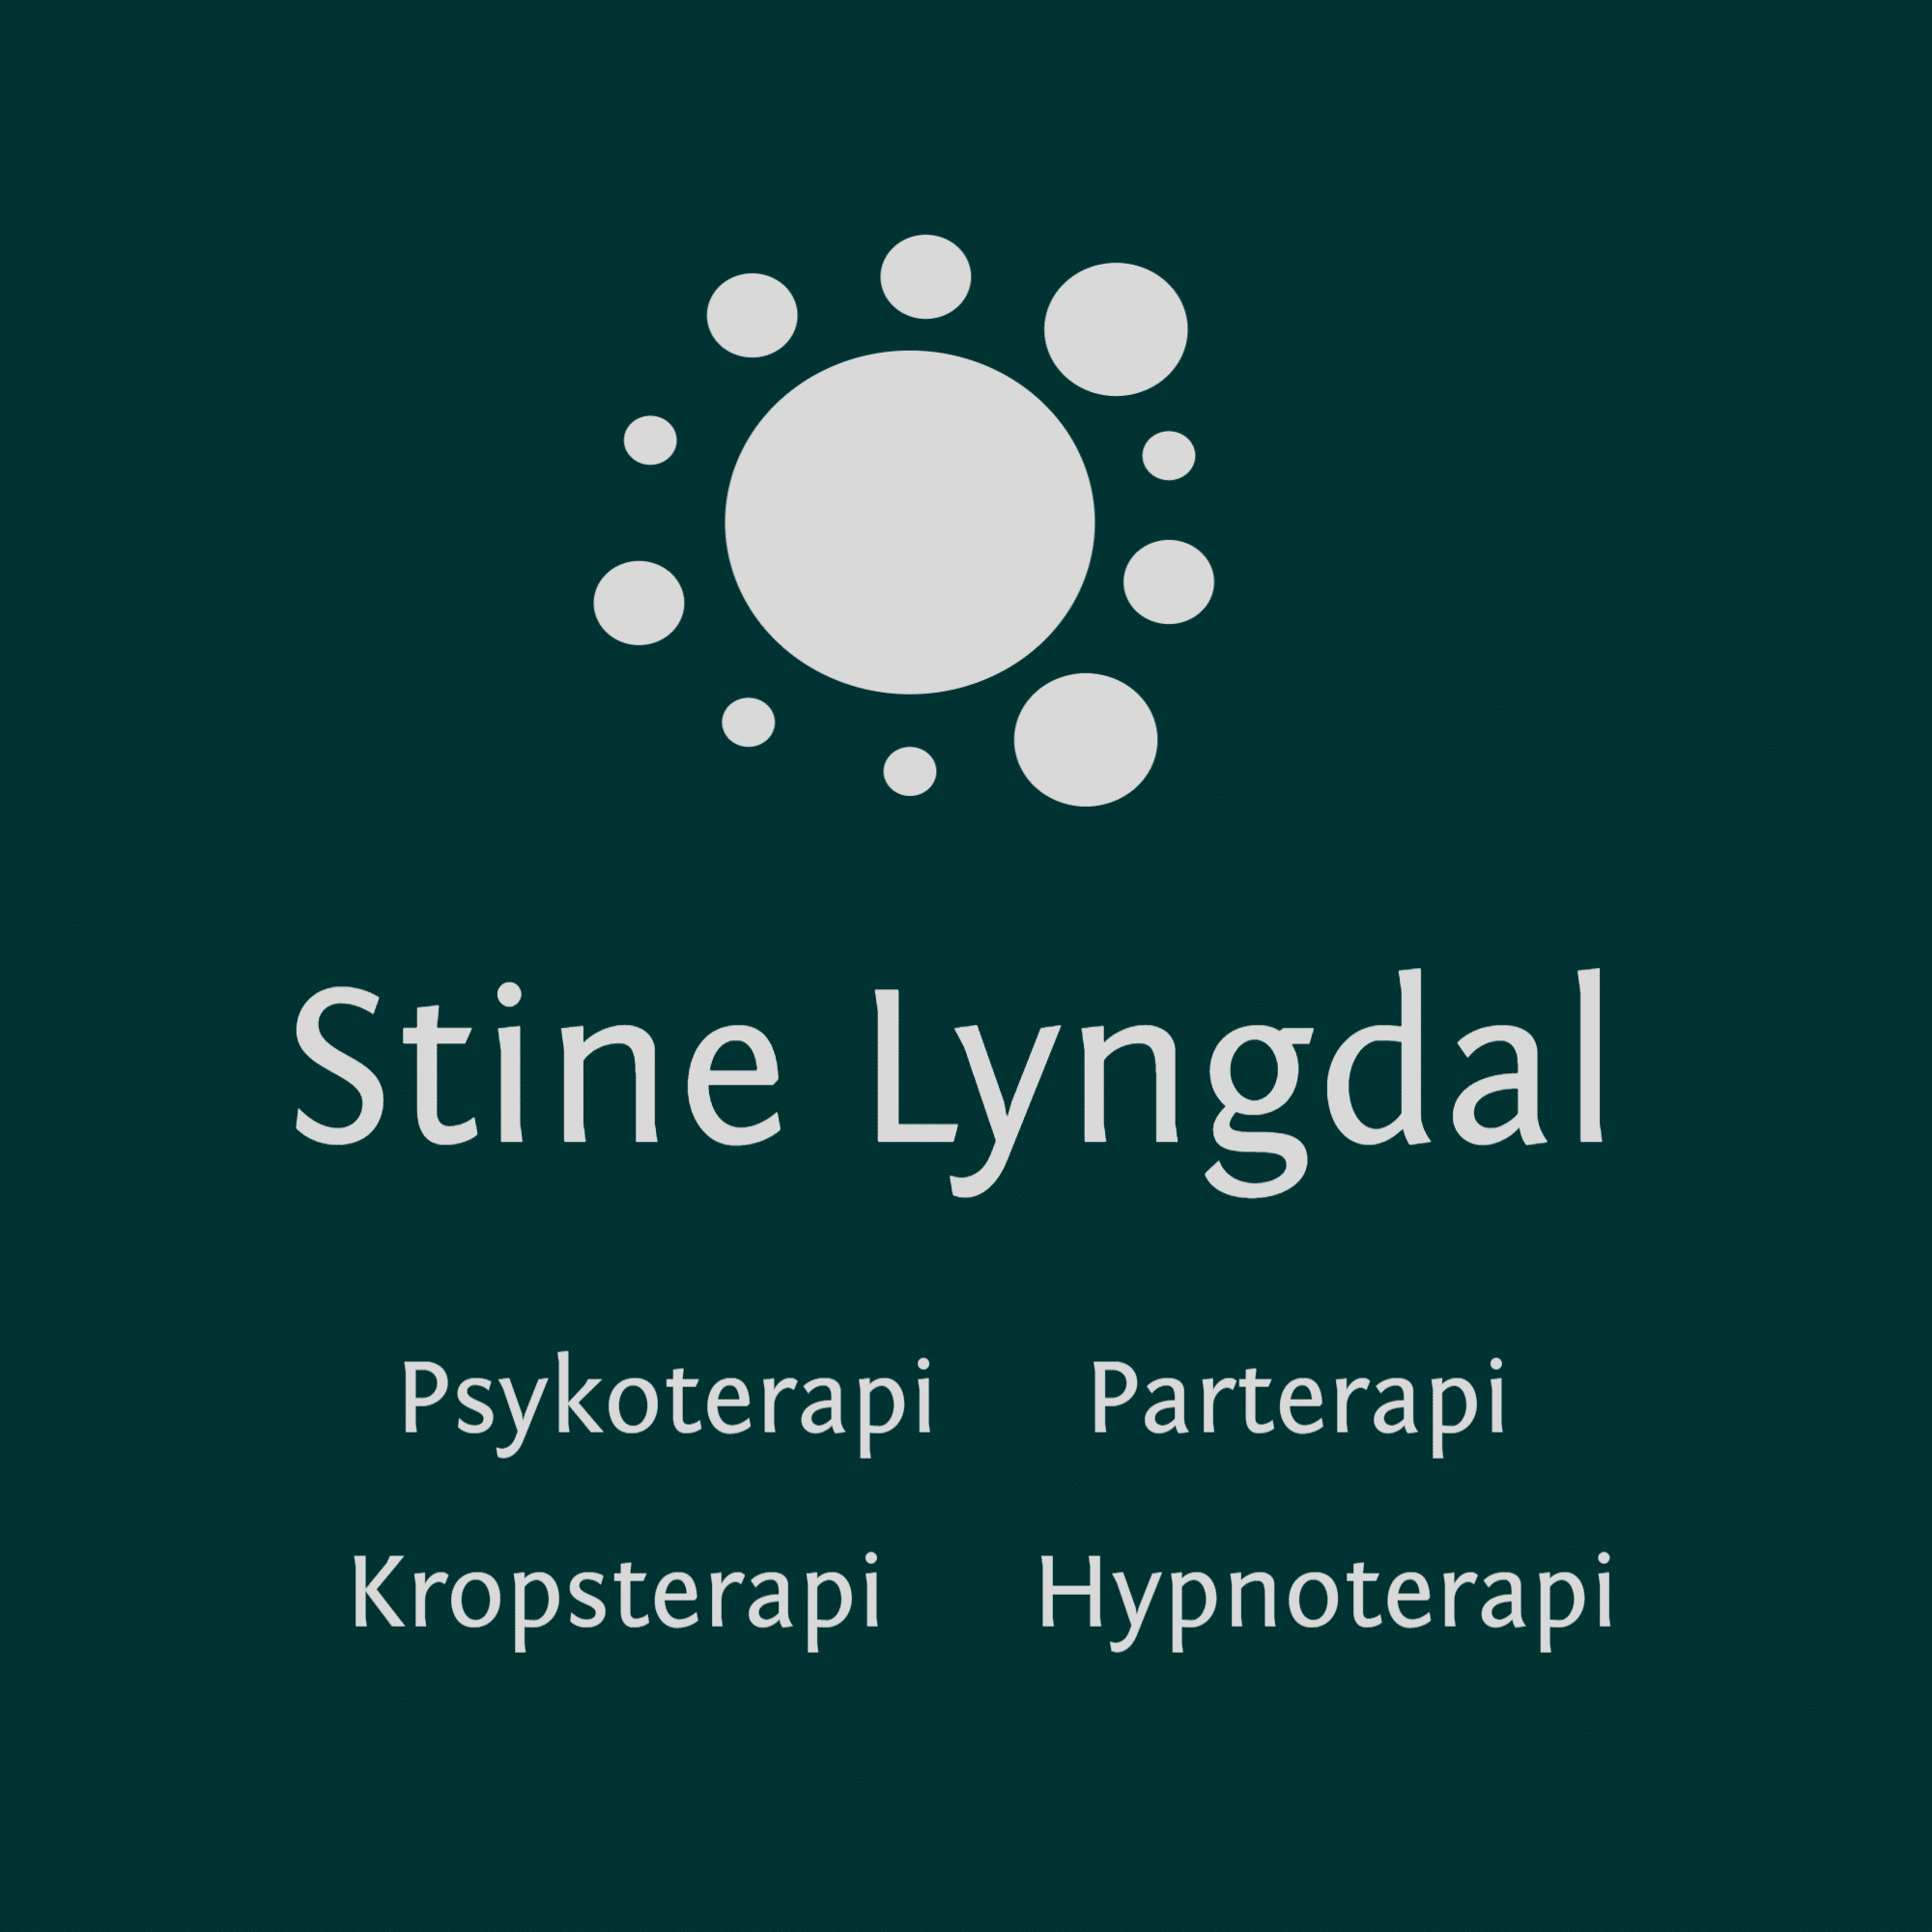 Stine Lyngdal